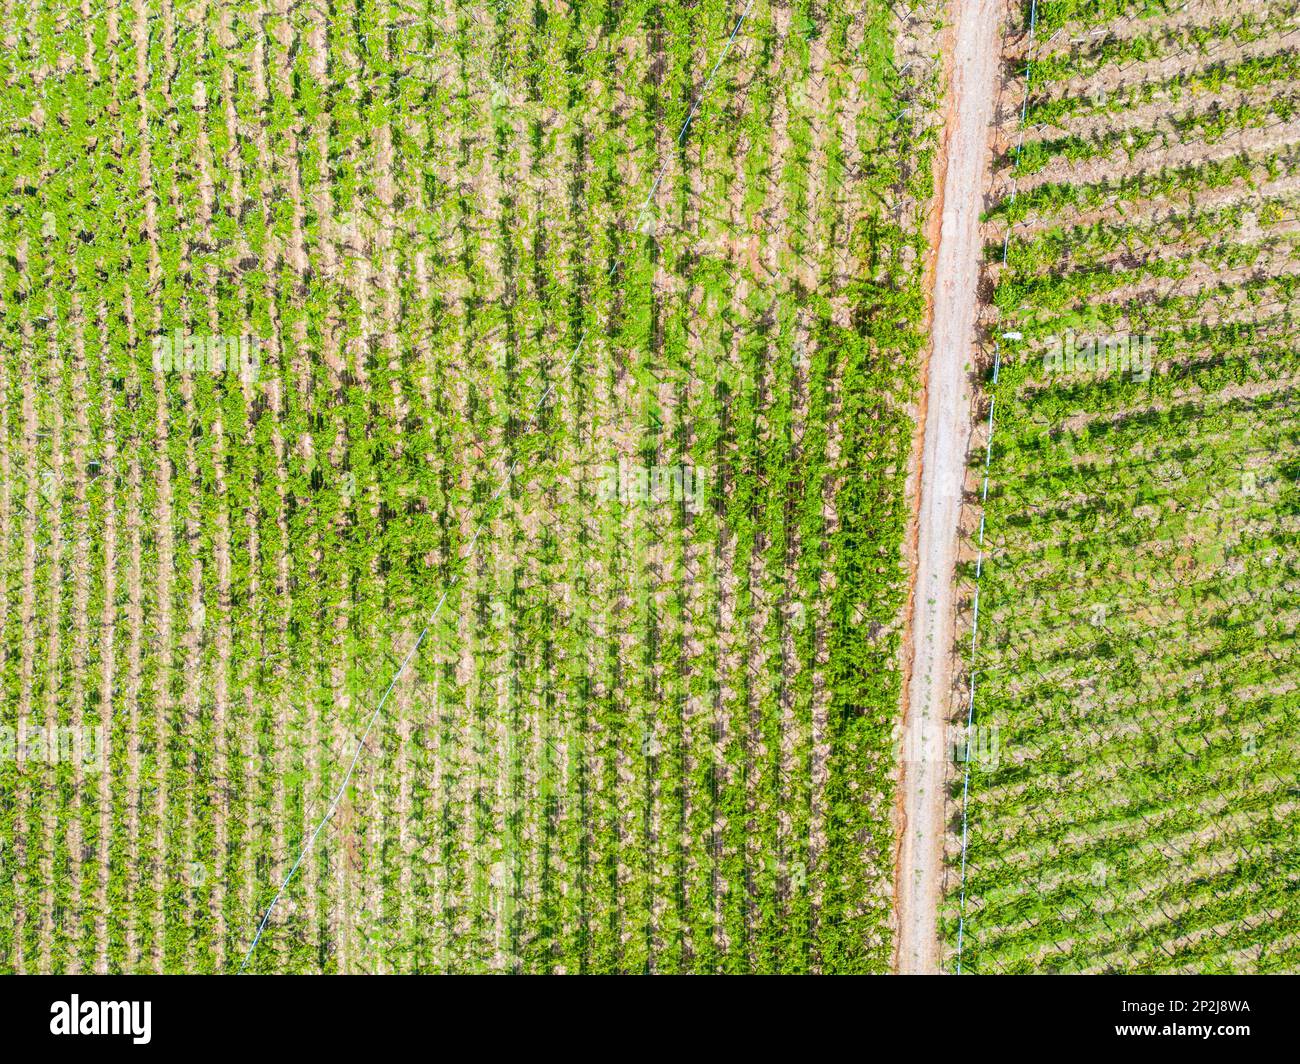 Aerial view of a vineyard, Otavio Rocha, Flores da Cunha, Rio Grande do Sul, Brazil Stock Photo